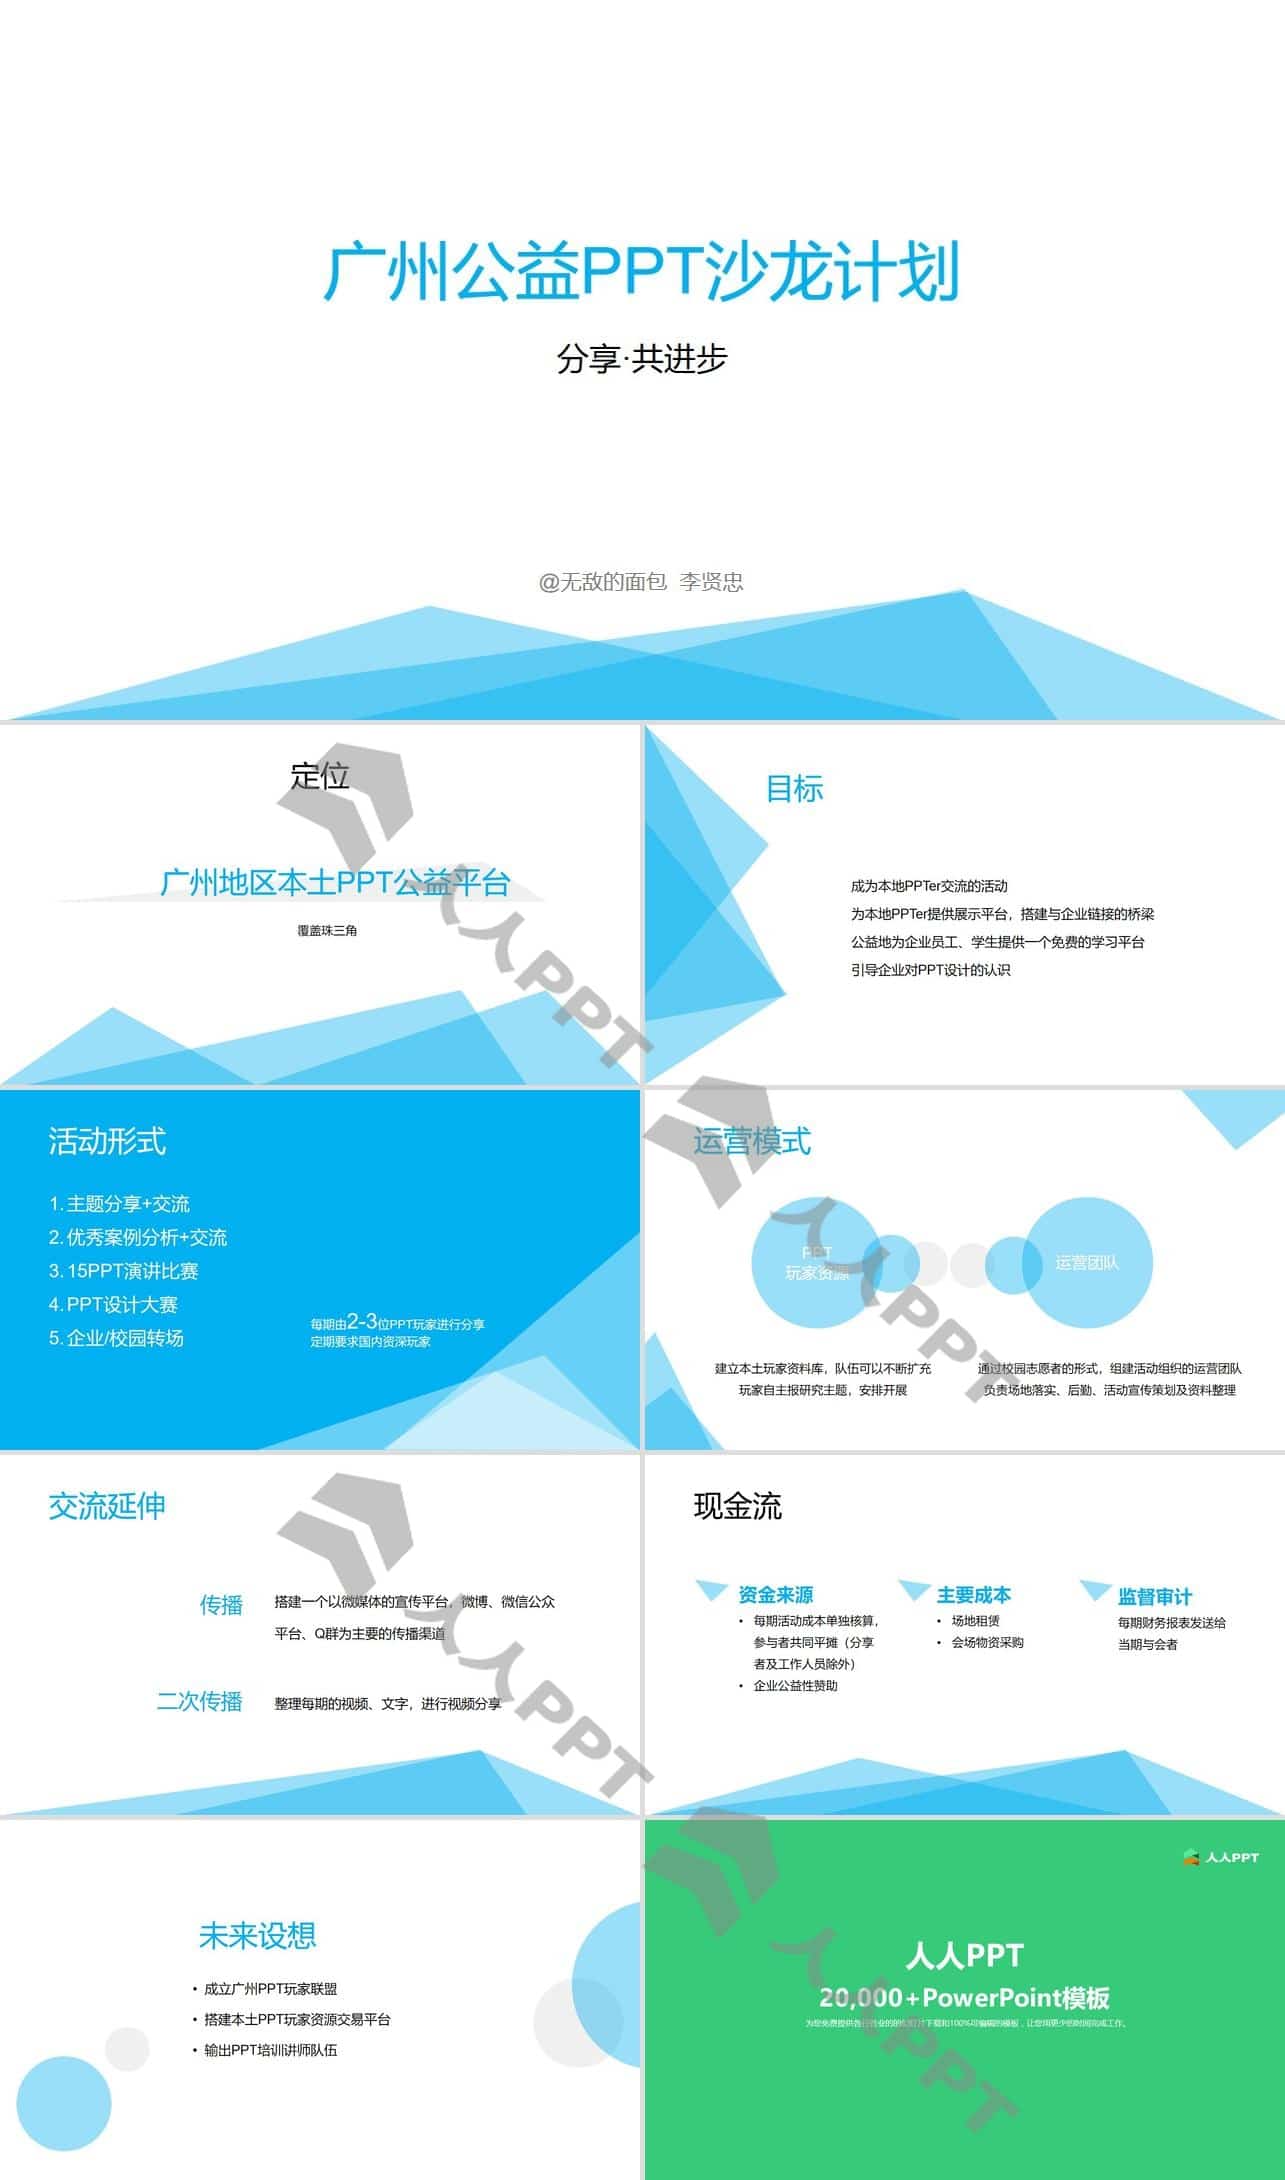 分享.共进步――广州公益PPT沙龙计划活动模板长图